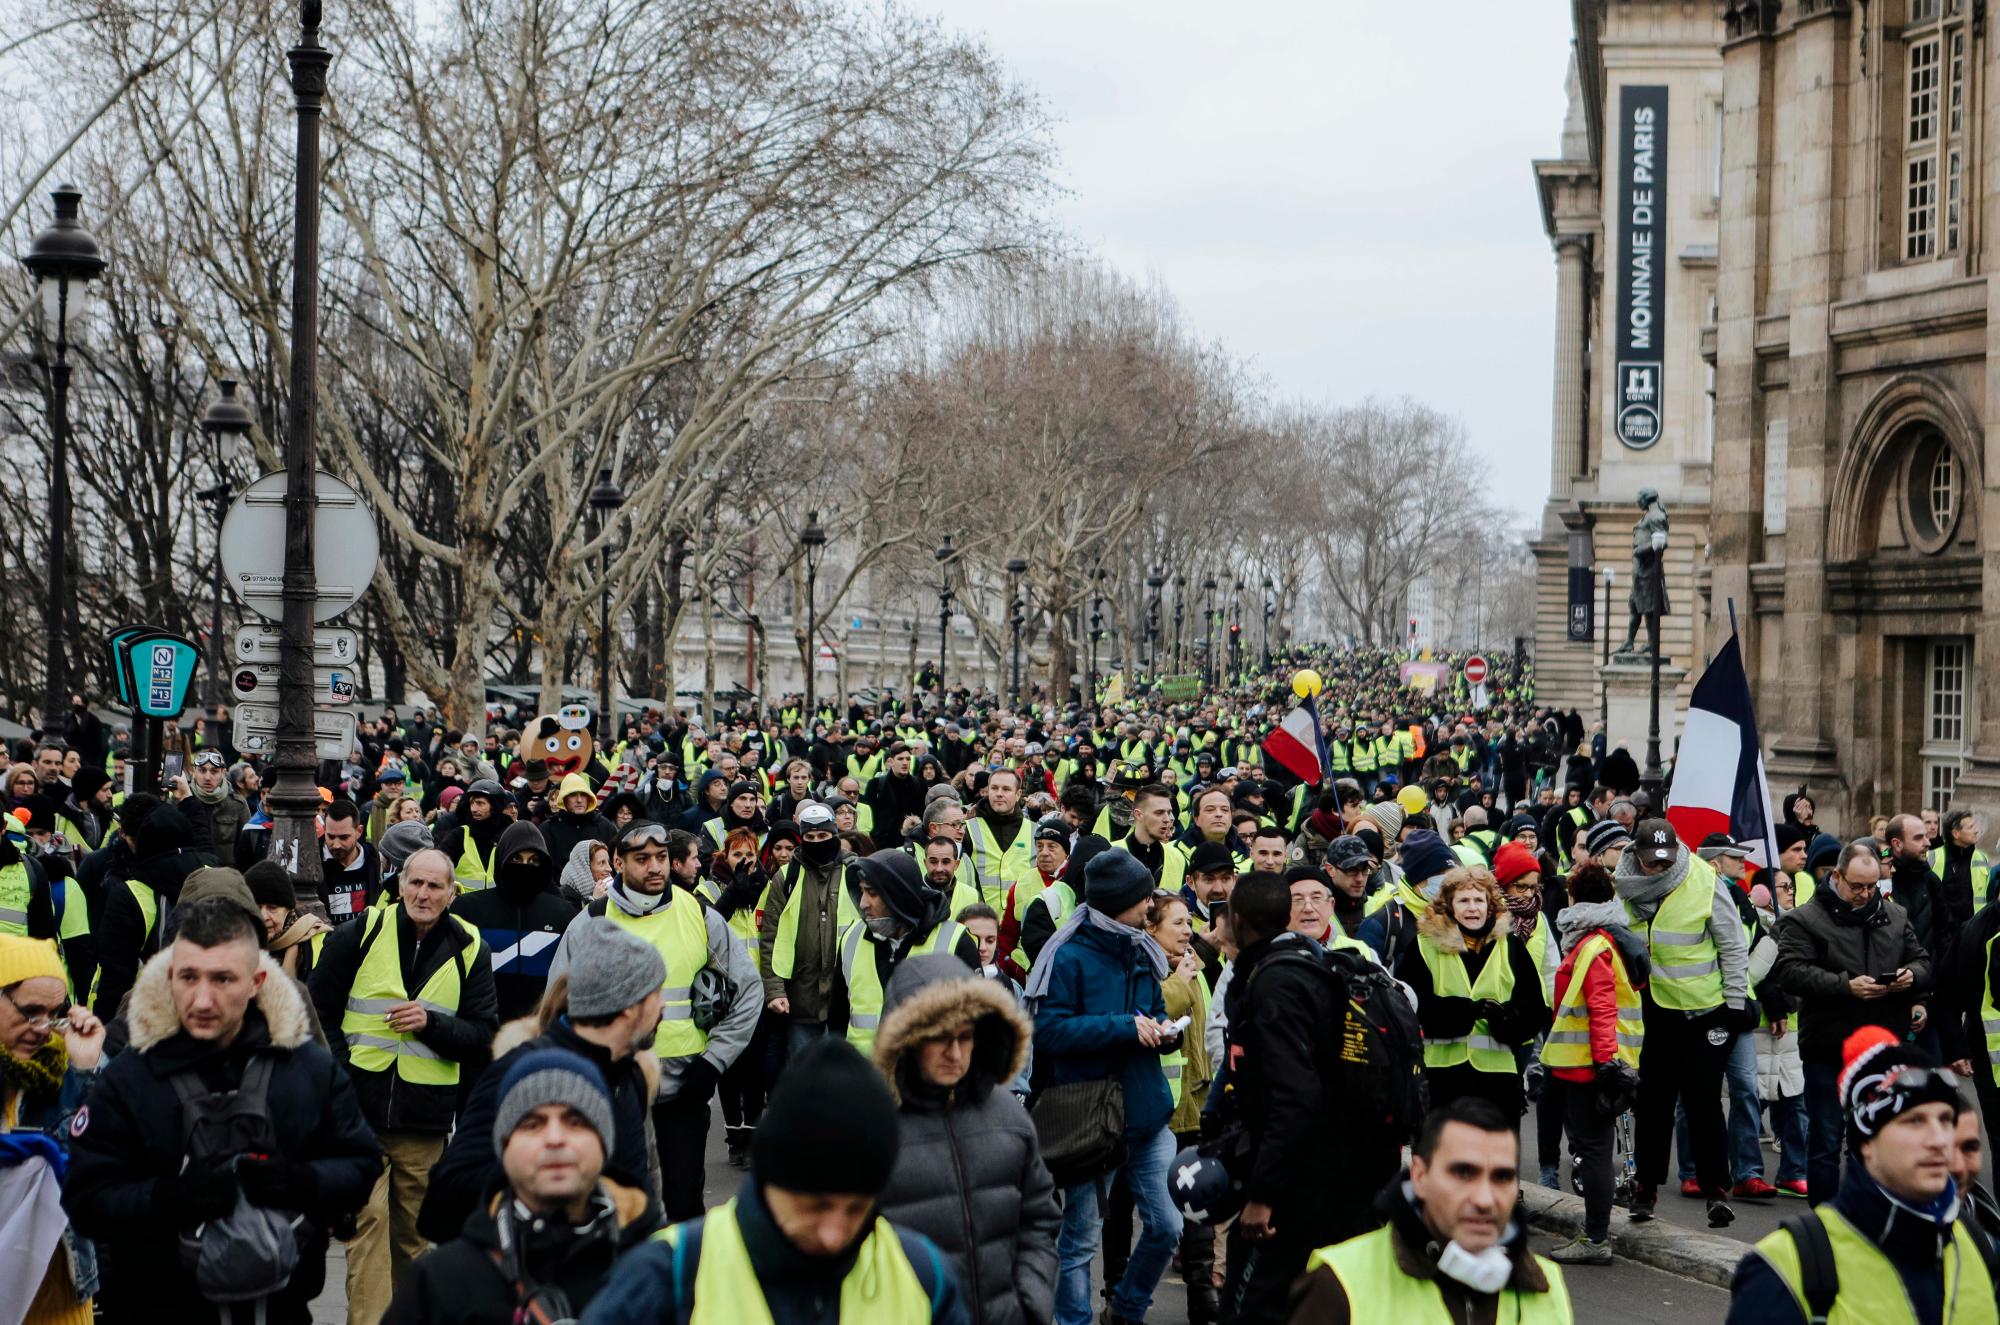 Los manifestantes vistiendo chalecos amarillos marchan durante una protesta en París, el sábado 5 de enero de 2019. Cientos de manifestantes intentaban dar nueva vida al movimiento de chalecos amarillos aparentemente menguantes de Francia con marchas en París y reuniones en otras ciudades.